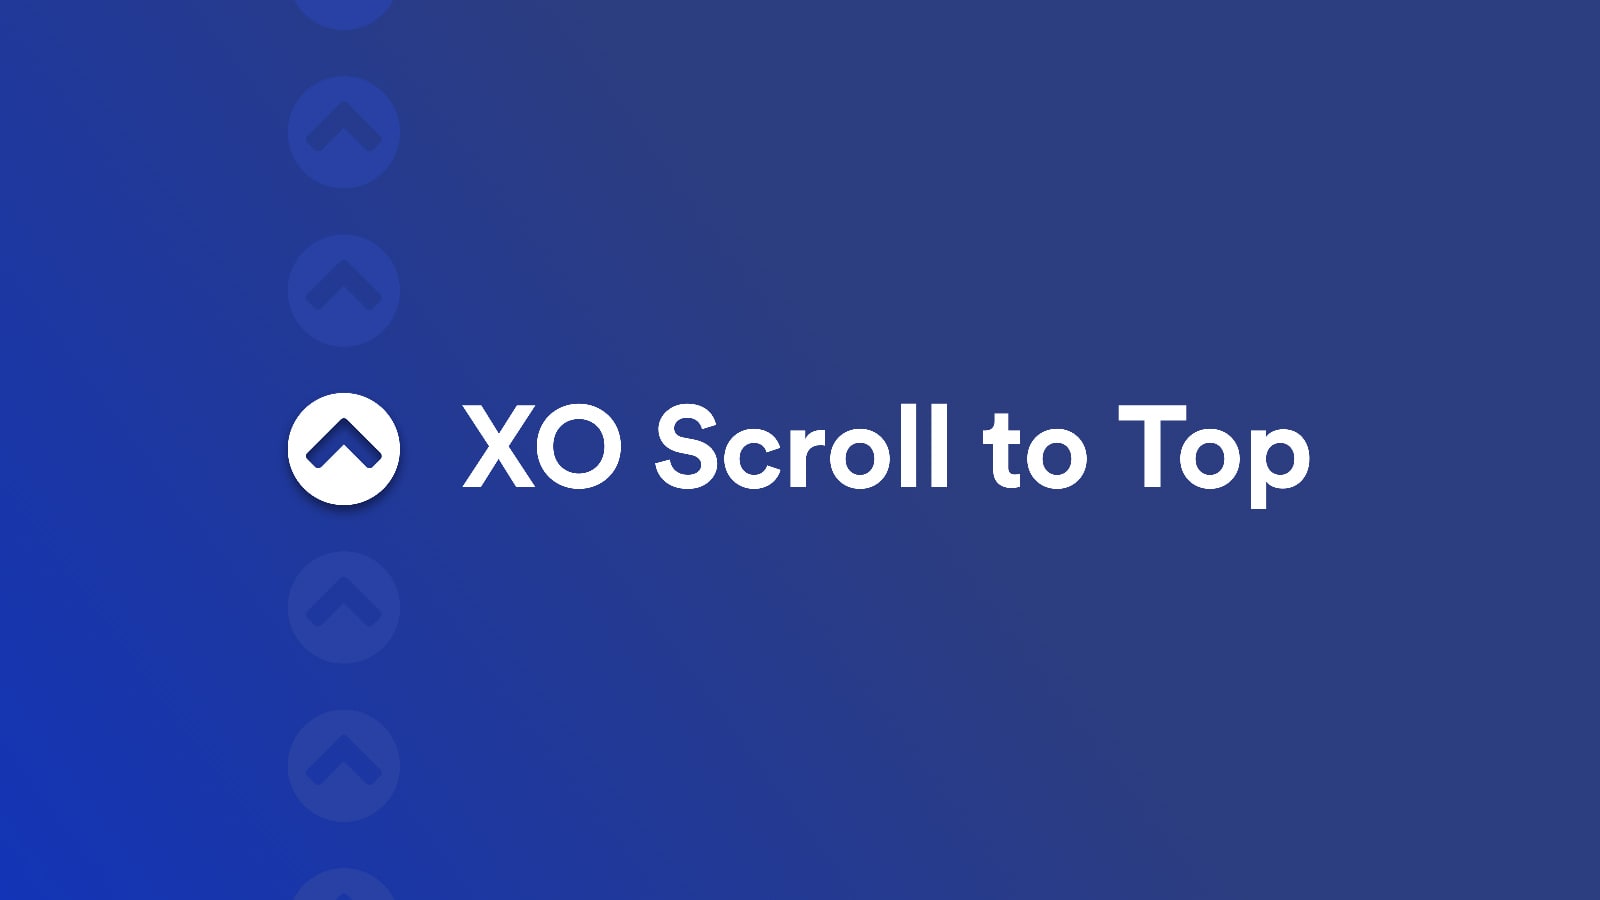 XO Scroll to Top Screenshot